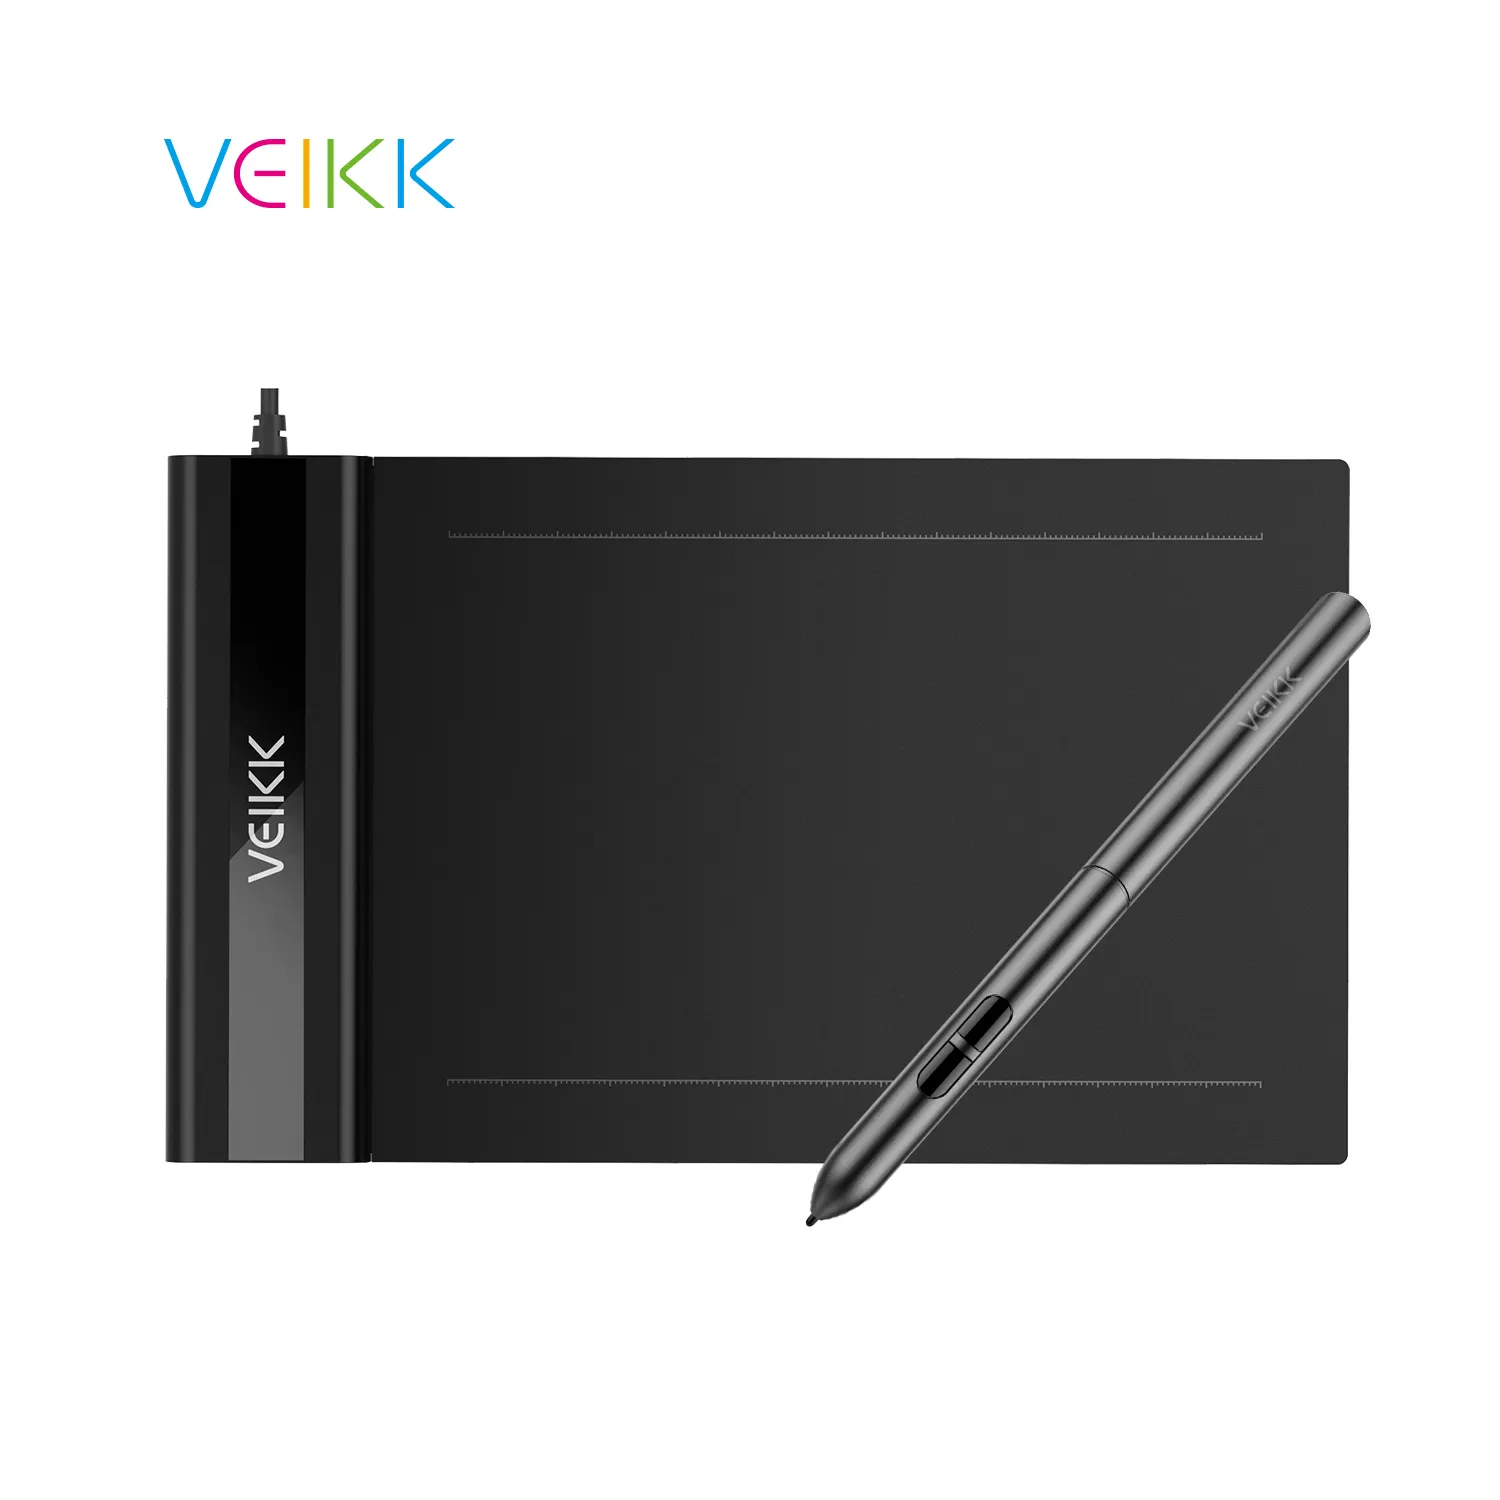 VEIKK S640 stylus גרפי לציור סוללה-משלוח עט 250pps גרפי <span class=keywords><strong>tablet</strong></span> עם stylus <span class=keywords><strong>tablet</strong></span> גרפי ציור